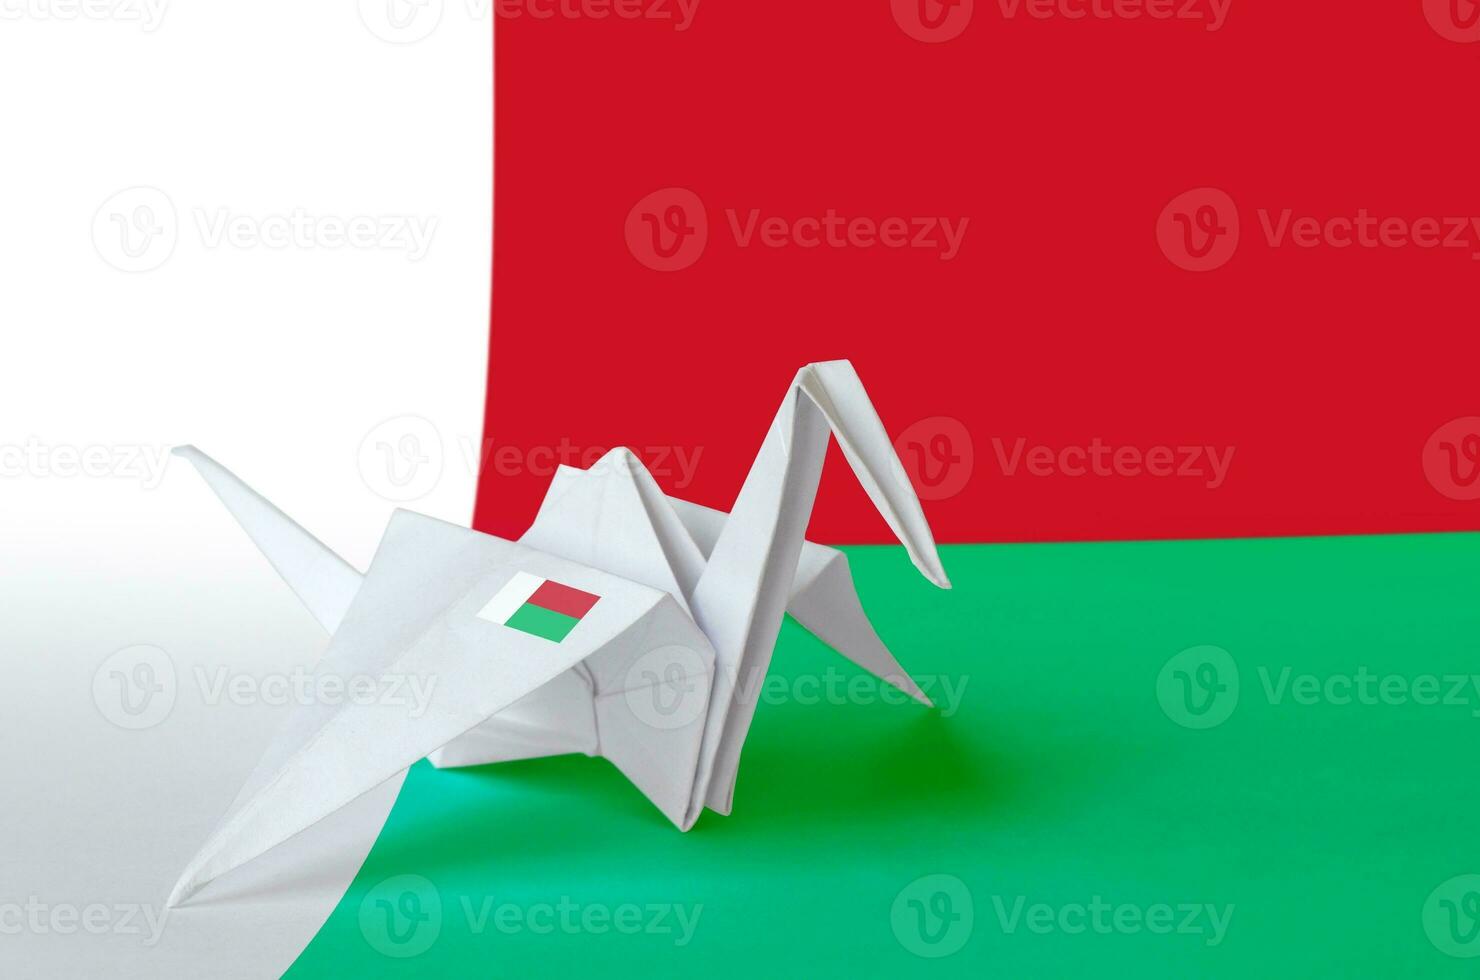 Madagáscar bandeira retratado em papel origami guindaste asa. feito à mão artes conceito foto